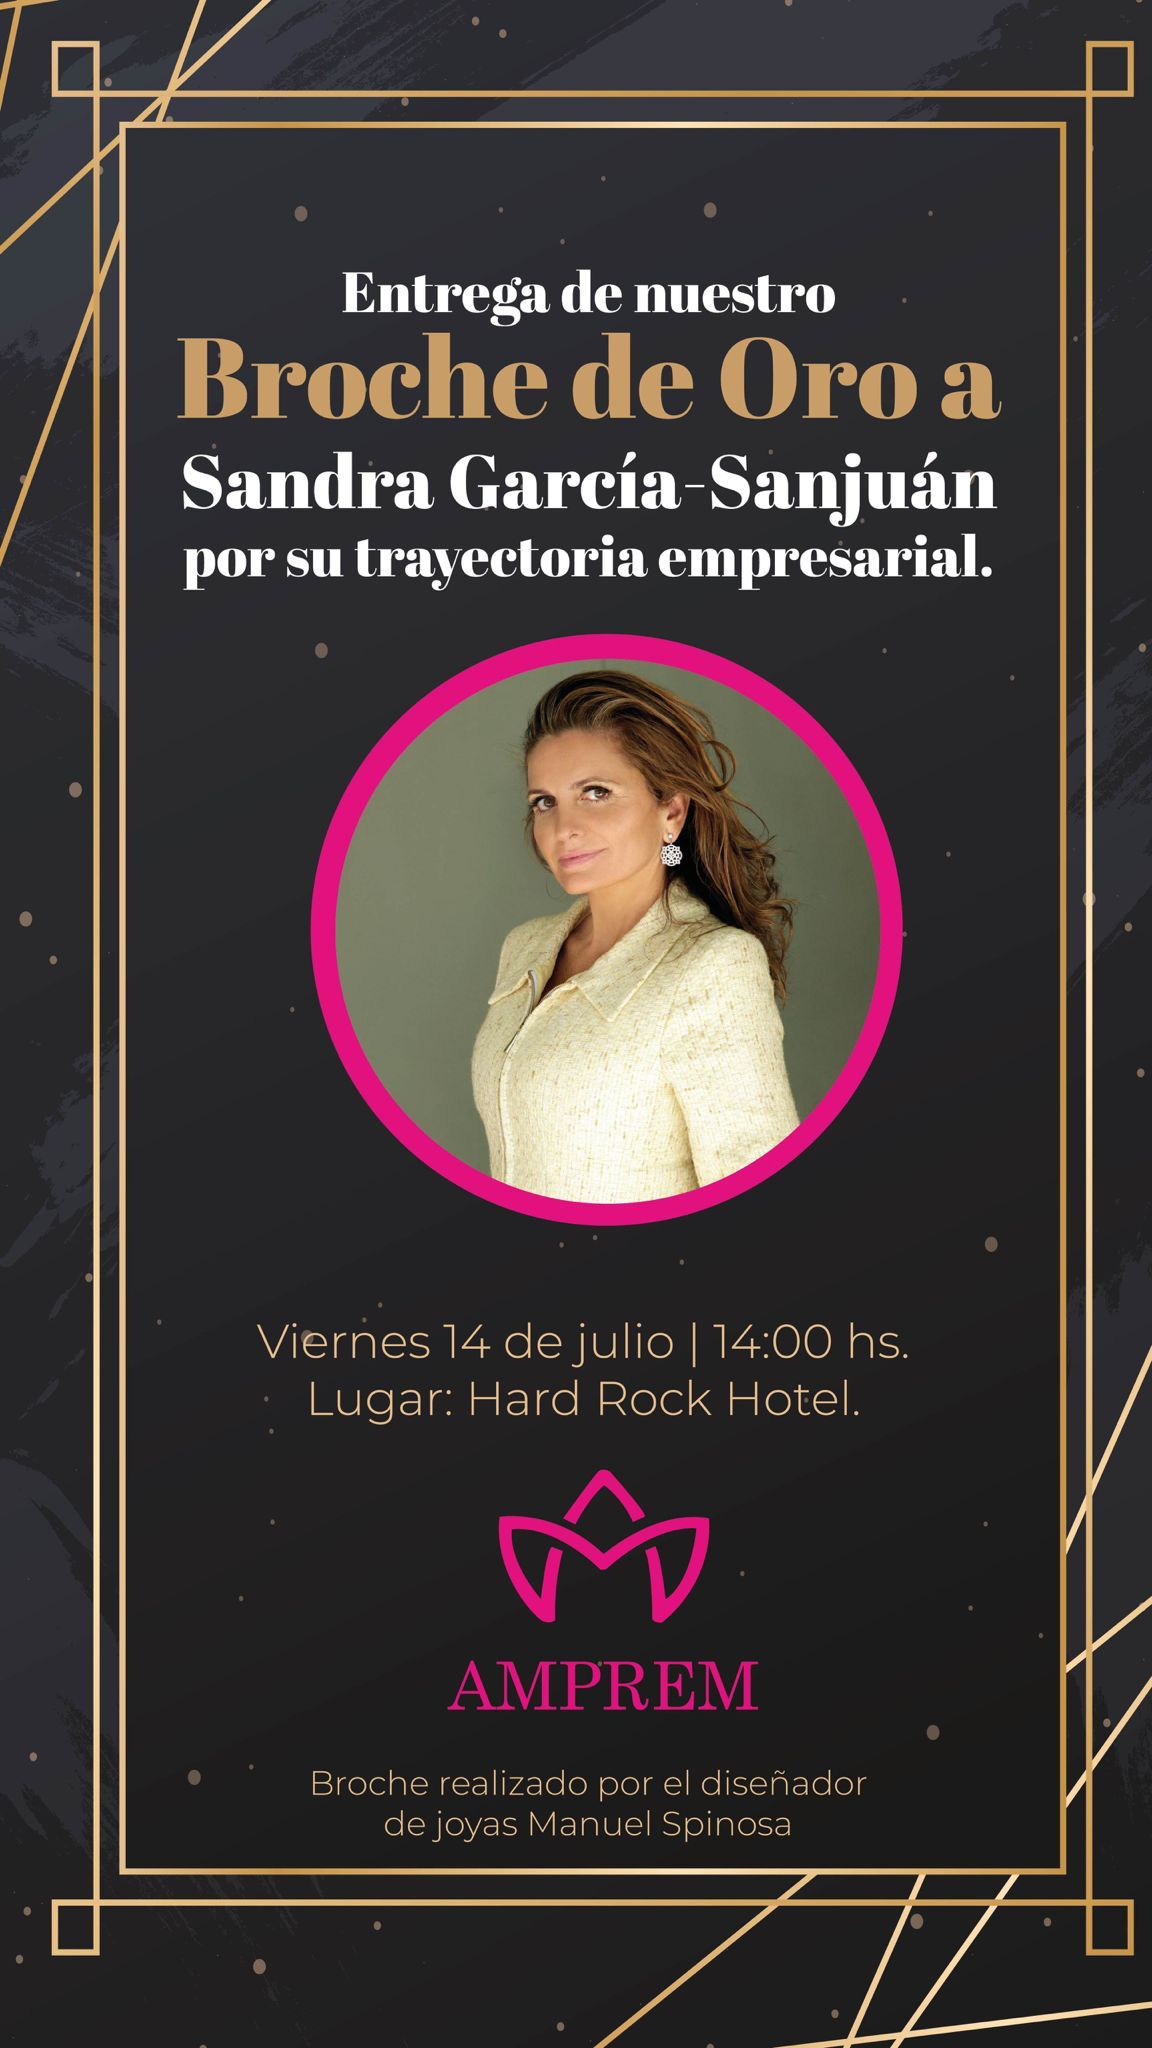 El Ayuntamiento respalda la gala anual de AMPREM, que otorgará el 14 de julio el premio Broche de Oro a la fundadora de Starlite, Sandra García-Sanjuán